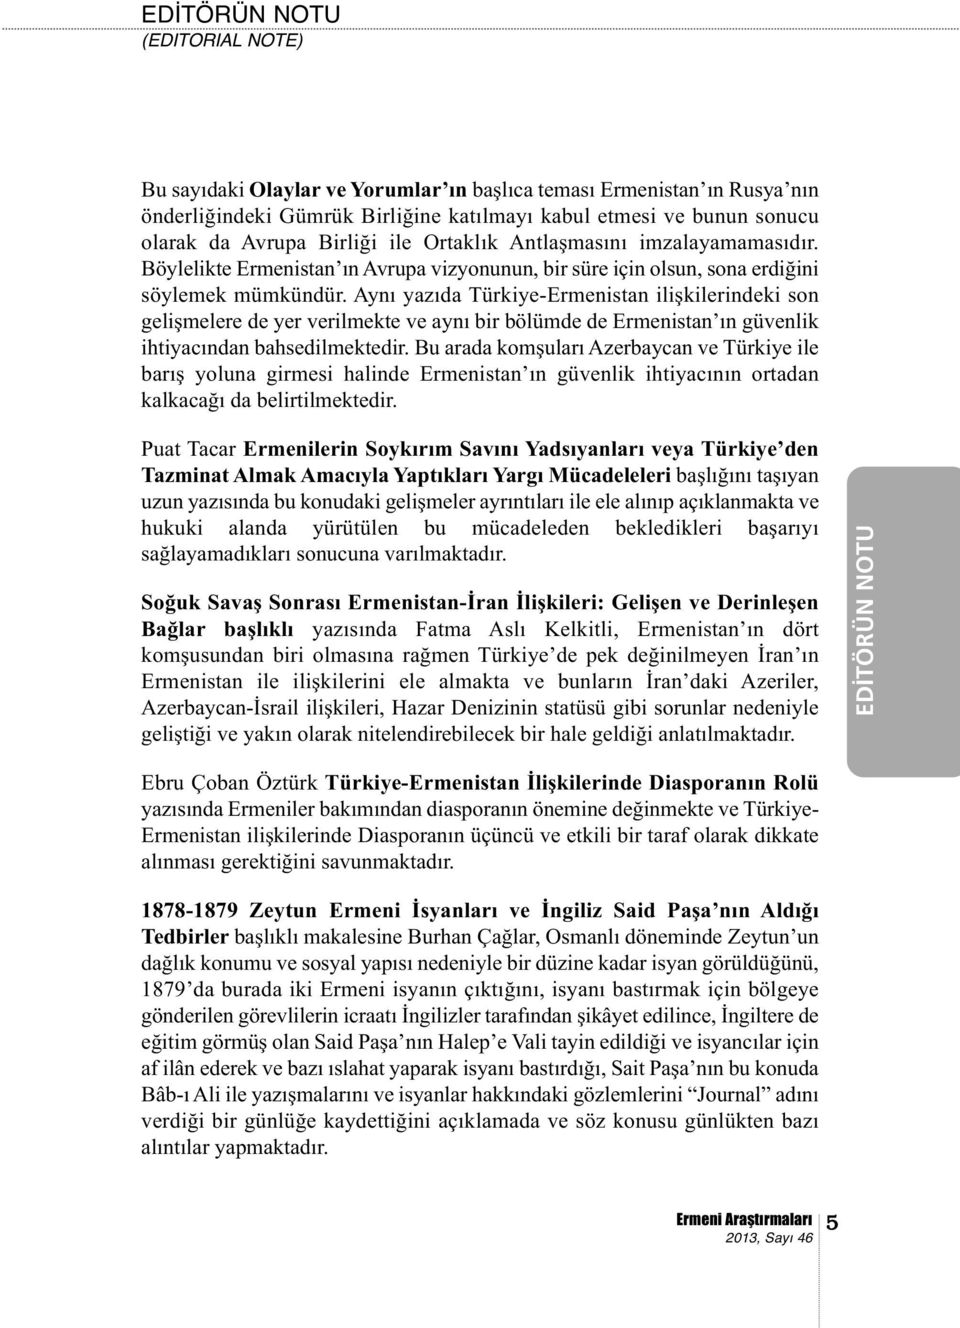 Aynı yazıda Türkiye-Ermenistan ilişkilerindeki son gelişmelere de yer verilmekte ve aynı bir bölümde de Ermenistan ın güvenlik ihtiyacından bahsedilmektedir.